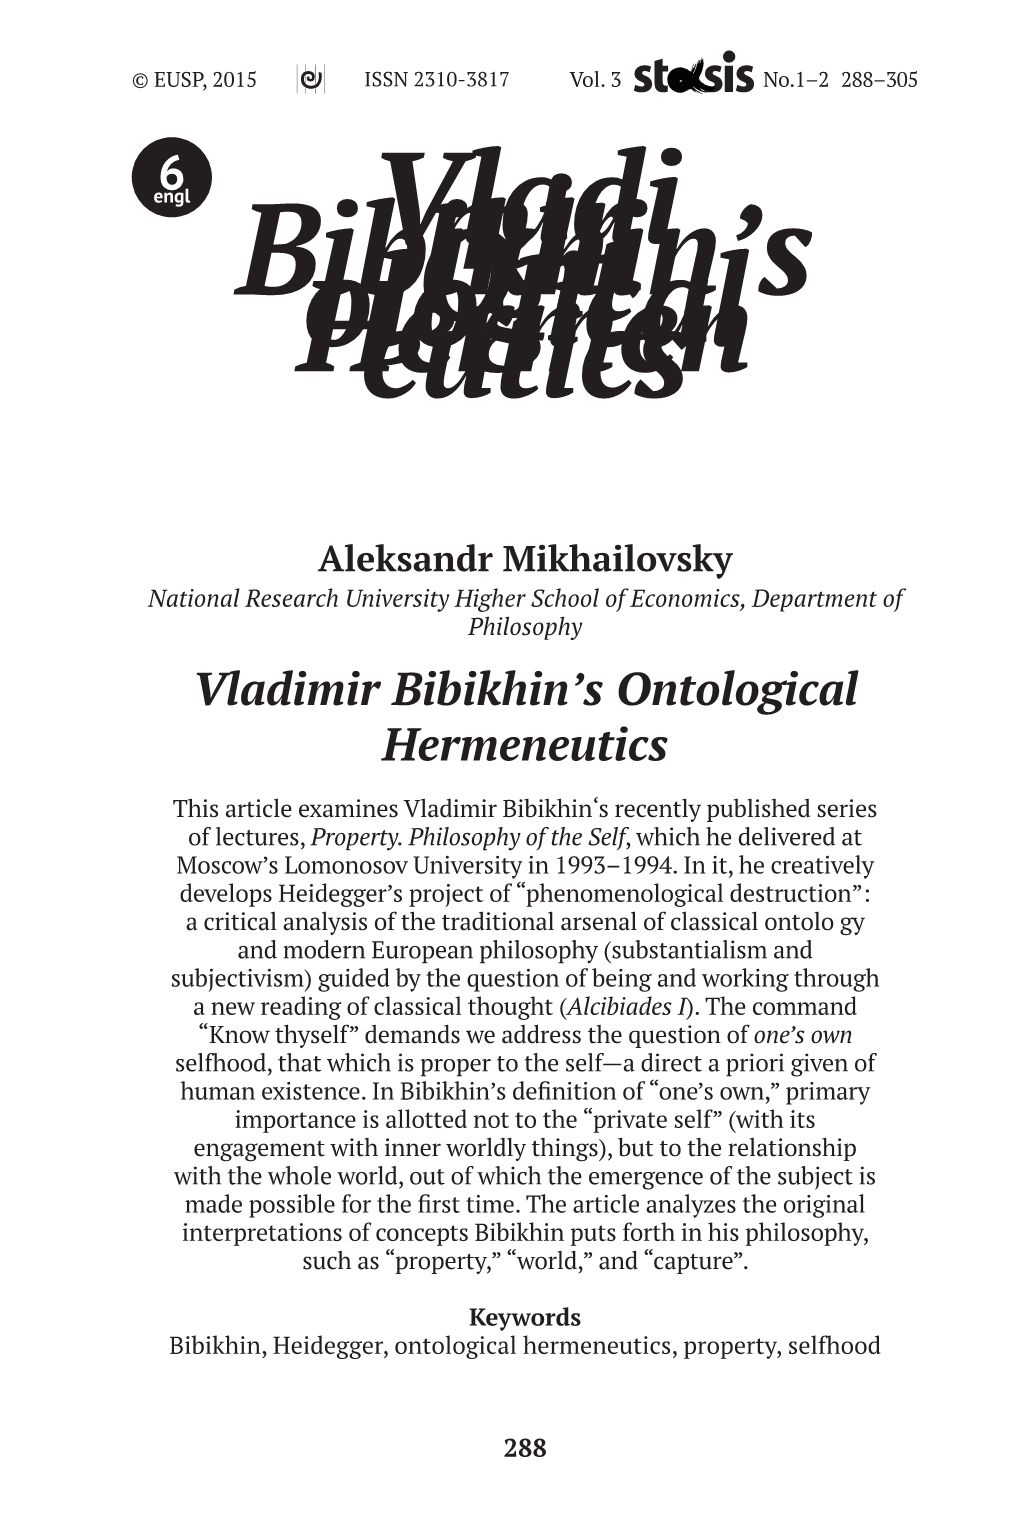 Vladimir Bibikhin's Ontological Hermeneutics